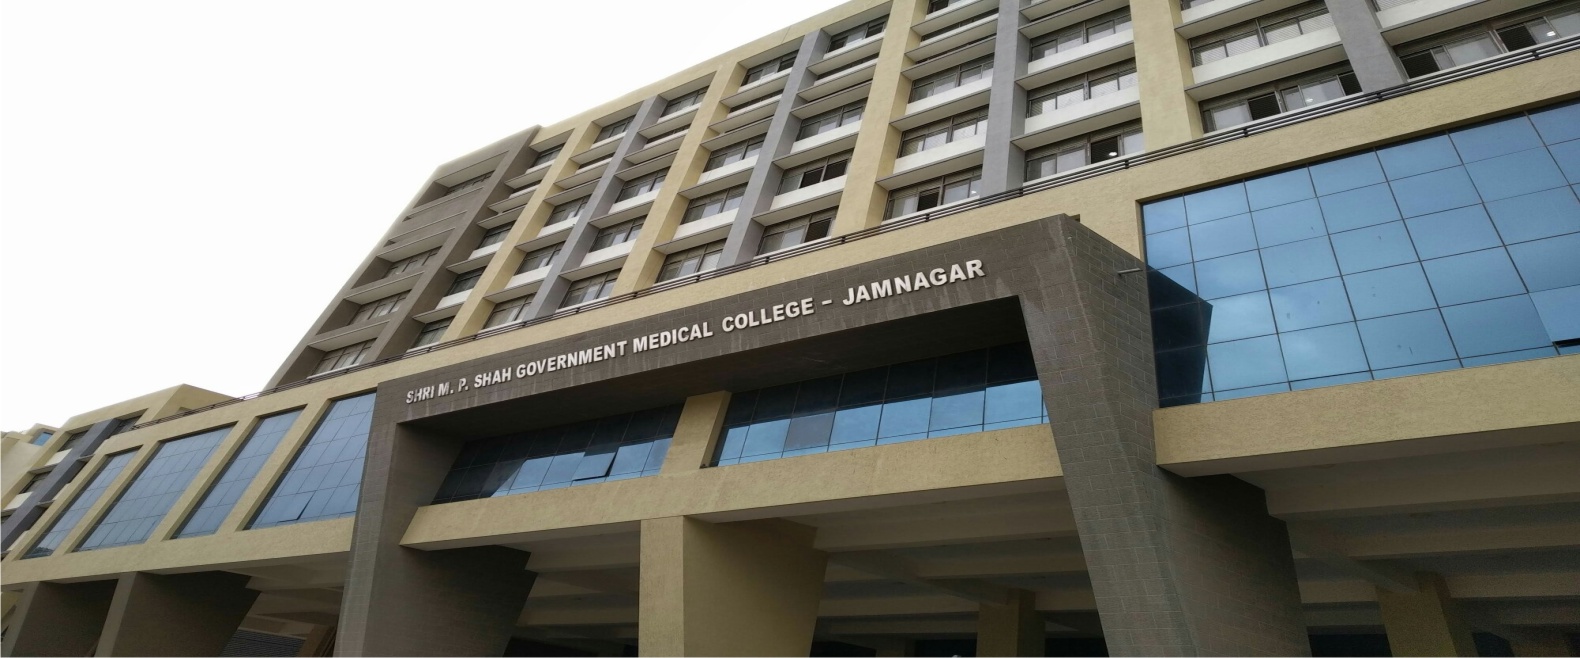 M. P. Shah Medical College